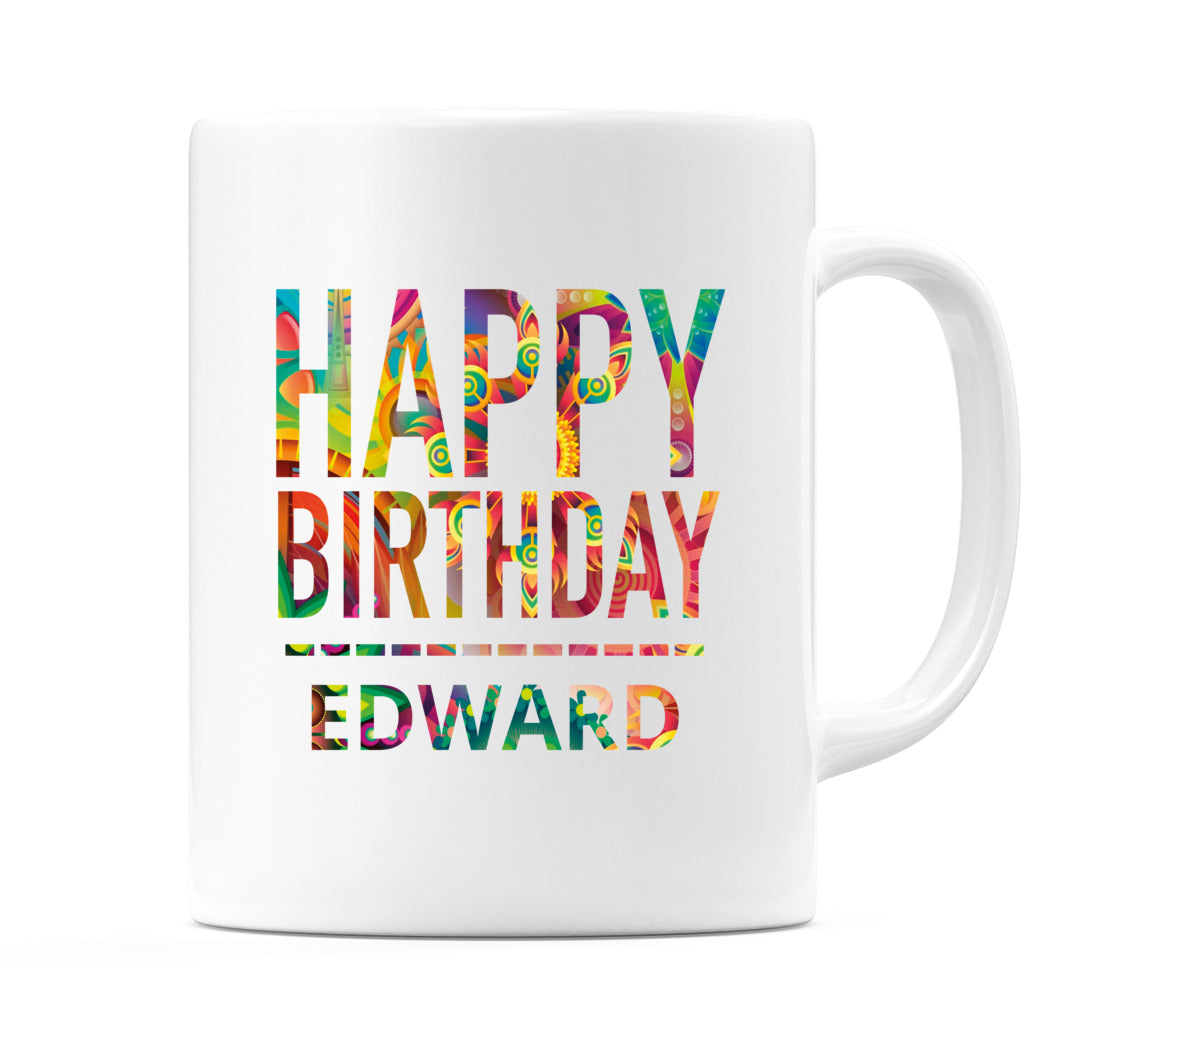 Happy Birthday Edward (Tie Dye Effect) Mug Cup by WeDoMugs